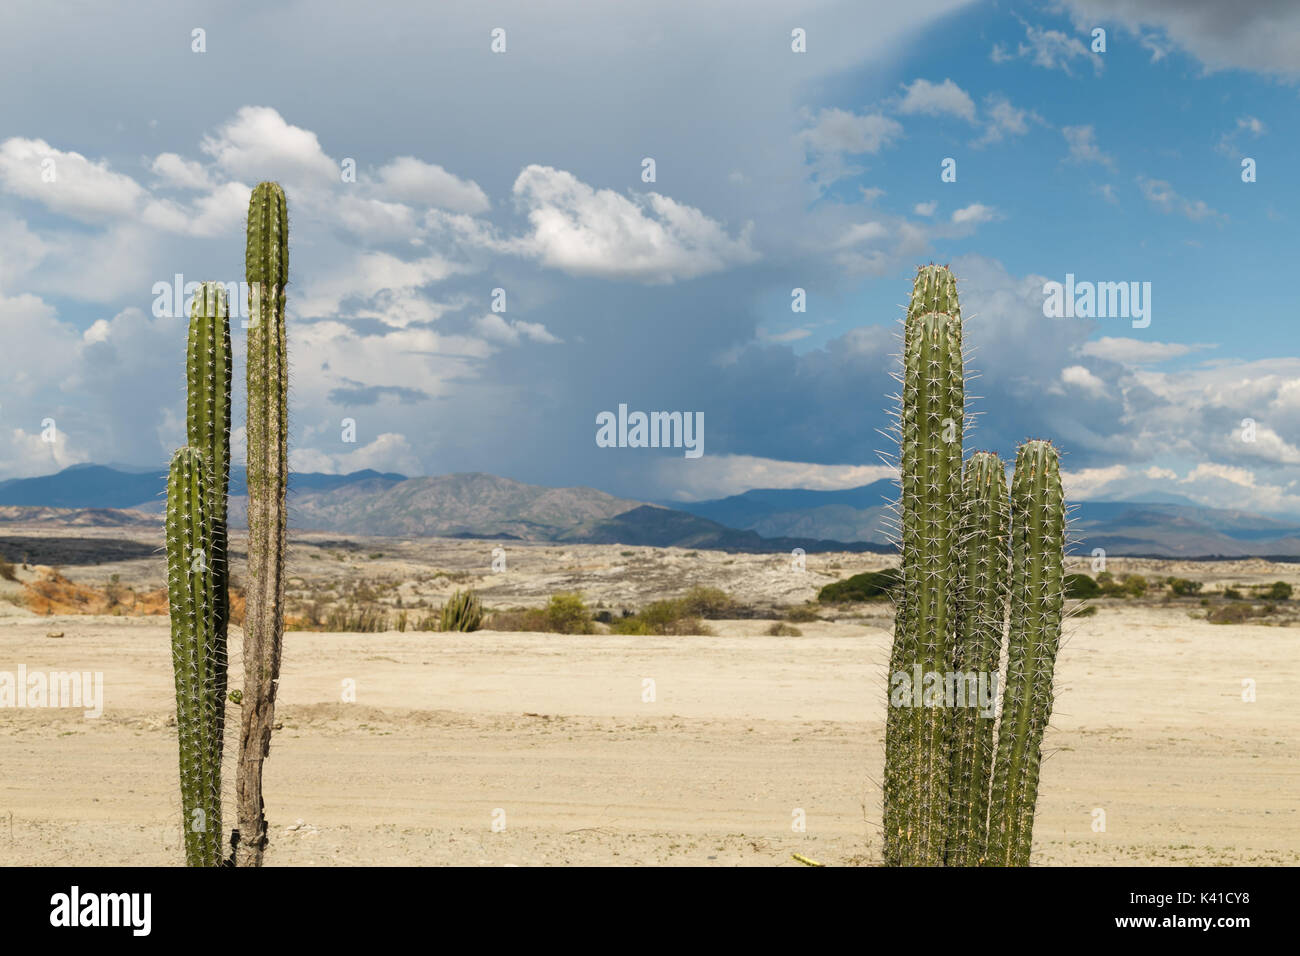 Big cactus dans le désert rouge, désert tatacoa, la Colombie, l'Amérique latine, de nuages et de sable, dans le désert de sable rouge Banque D'Images